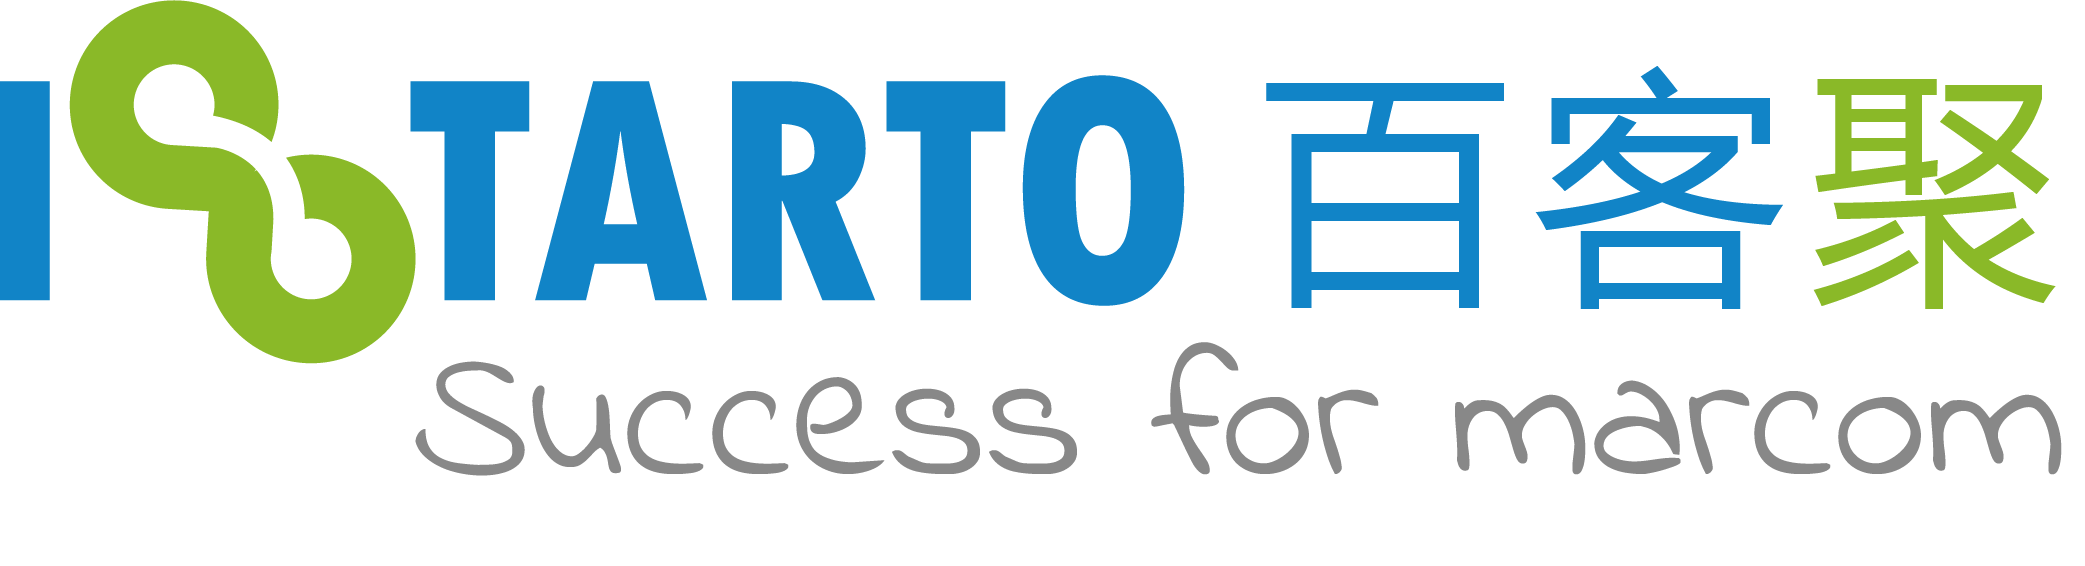 iStarto百客聚，提供包括网站建设, seo服务, 搜索营销，社媒广告，营销自动化, 搜索引擎优化等互联网广告技术服务。